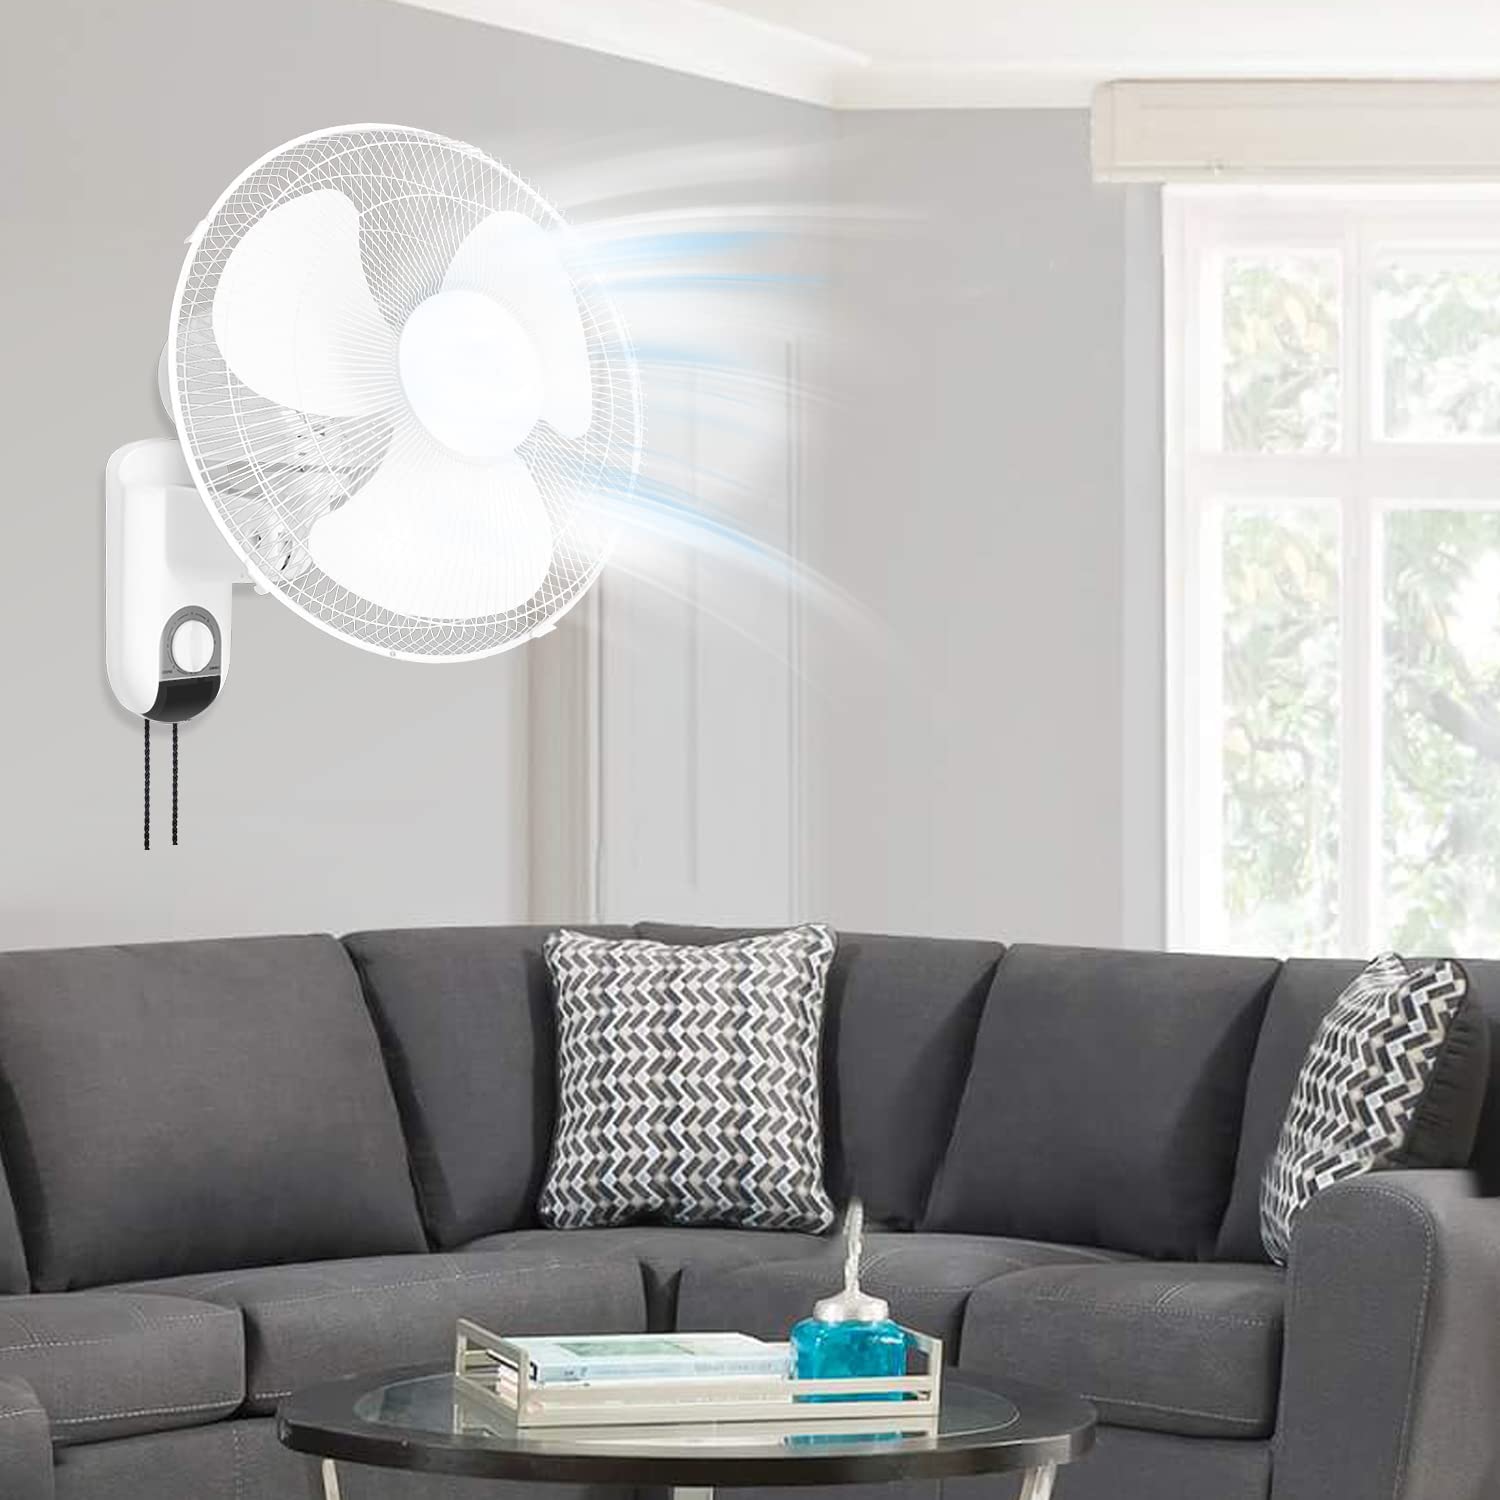 Digital Household Wall Mount Fans 16 Inch Adjustable Tilt, 90 Degree, 3 Speed Settings, White